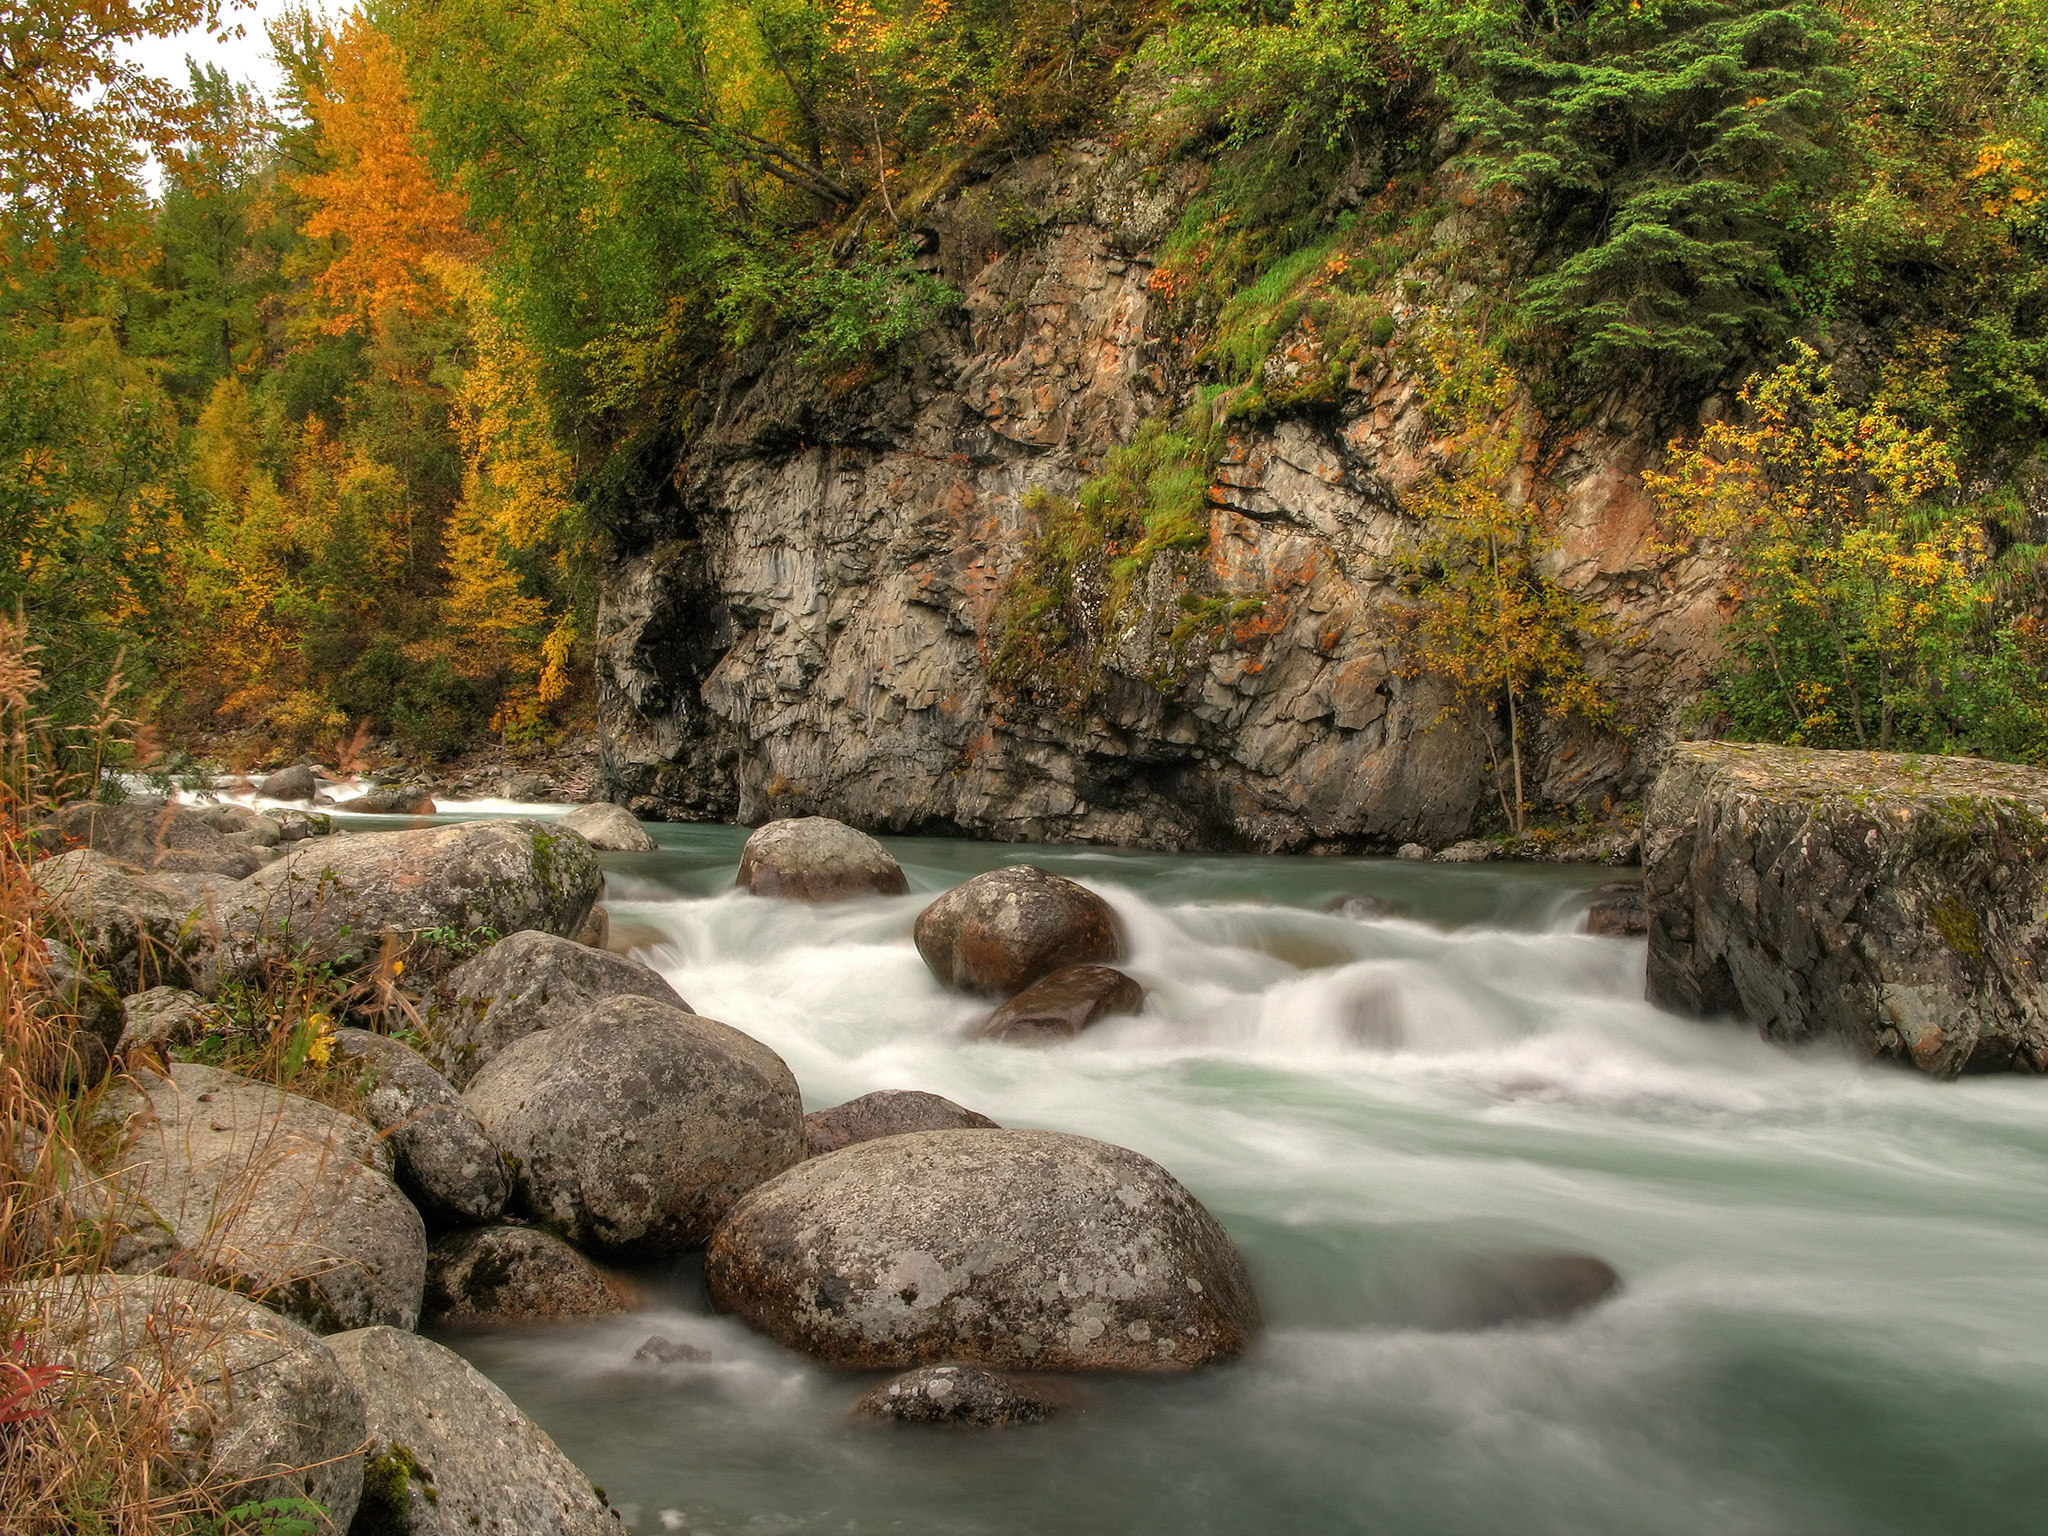 Stone river. • Горная река Улу-Узень. Горные реки Сочи. Горная река в лесу. Камни в реке.